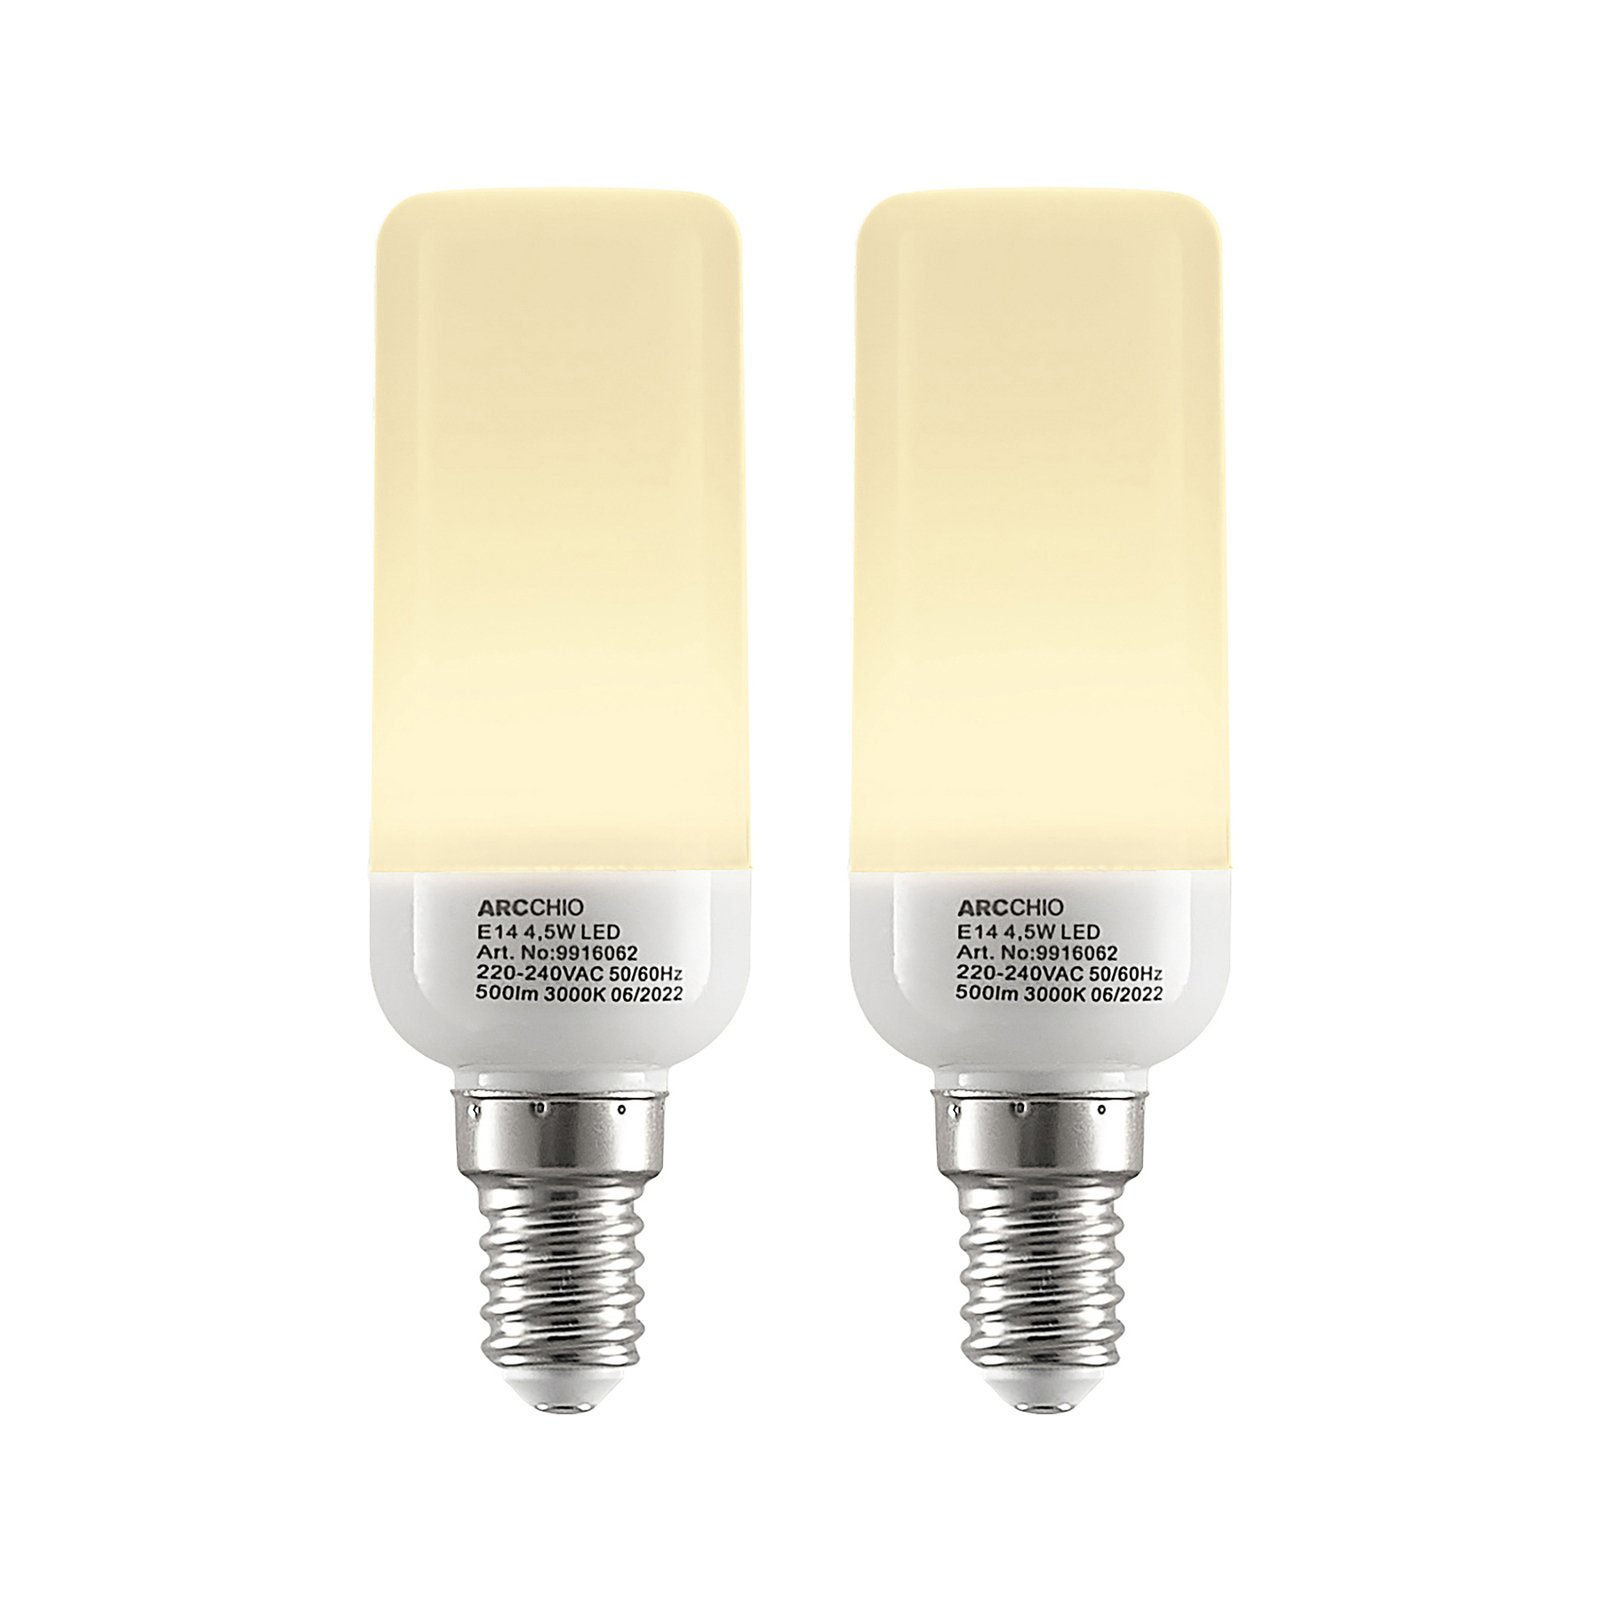 Arcchio LED tube bulb E14 4.5W 3,000K set of 2